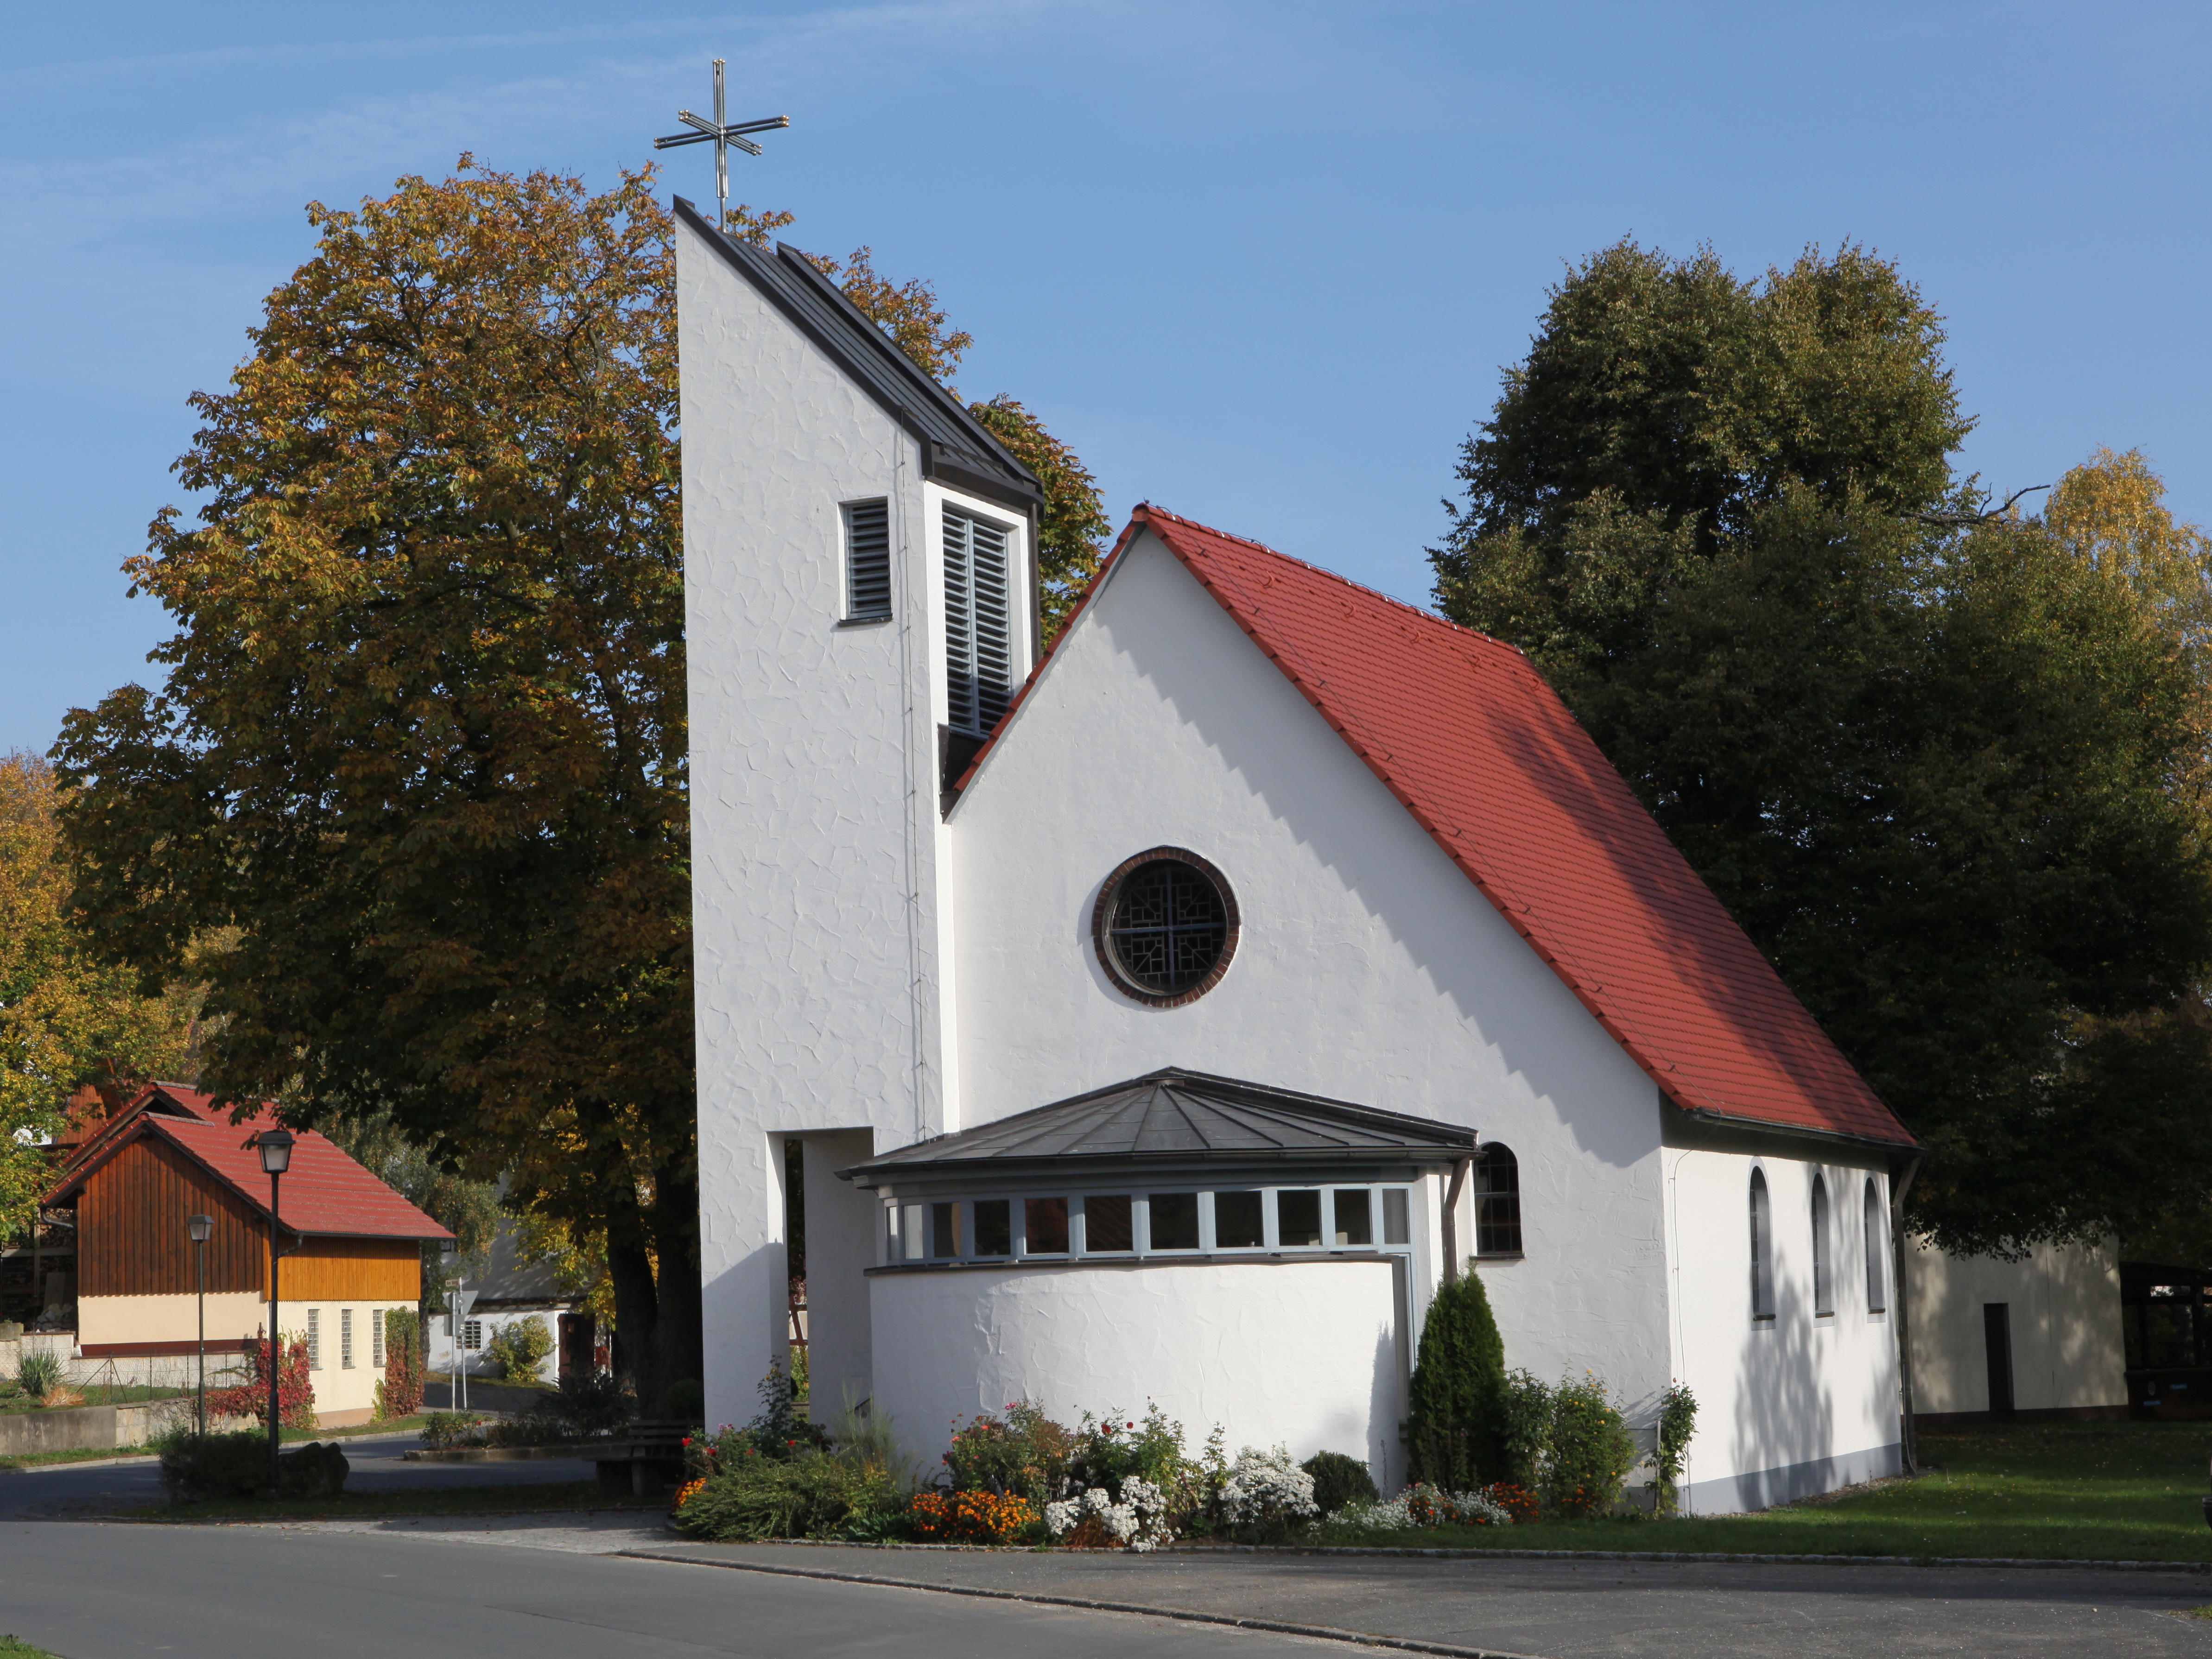 File:Großrettbach-Kirche-innen-Rissmonitor.JPG - Wikimedia Commons